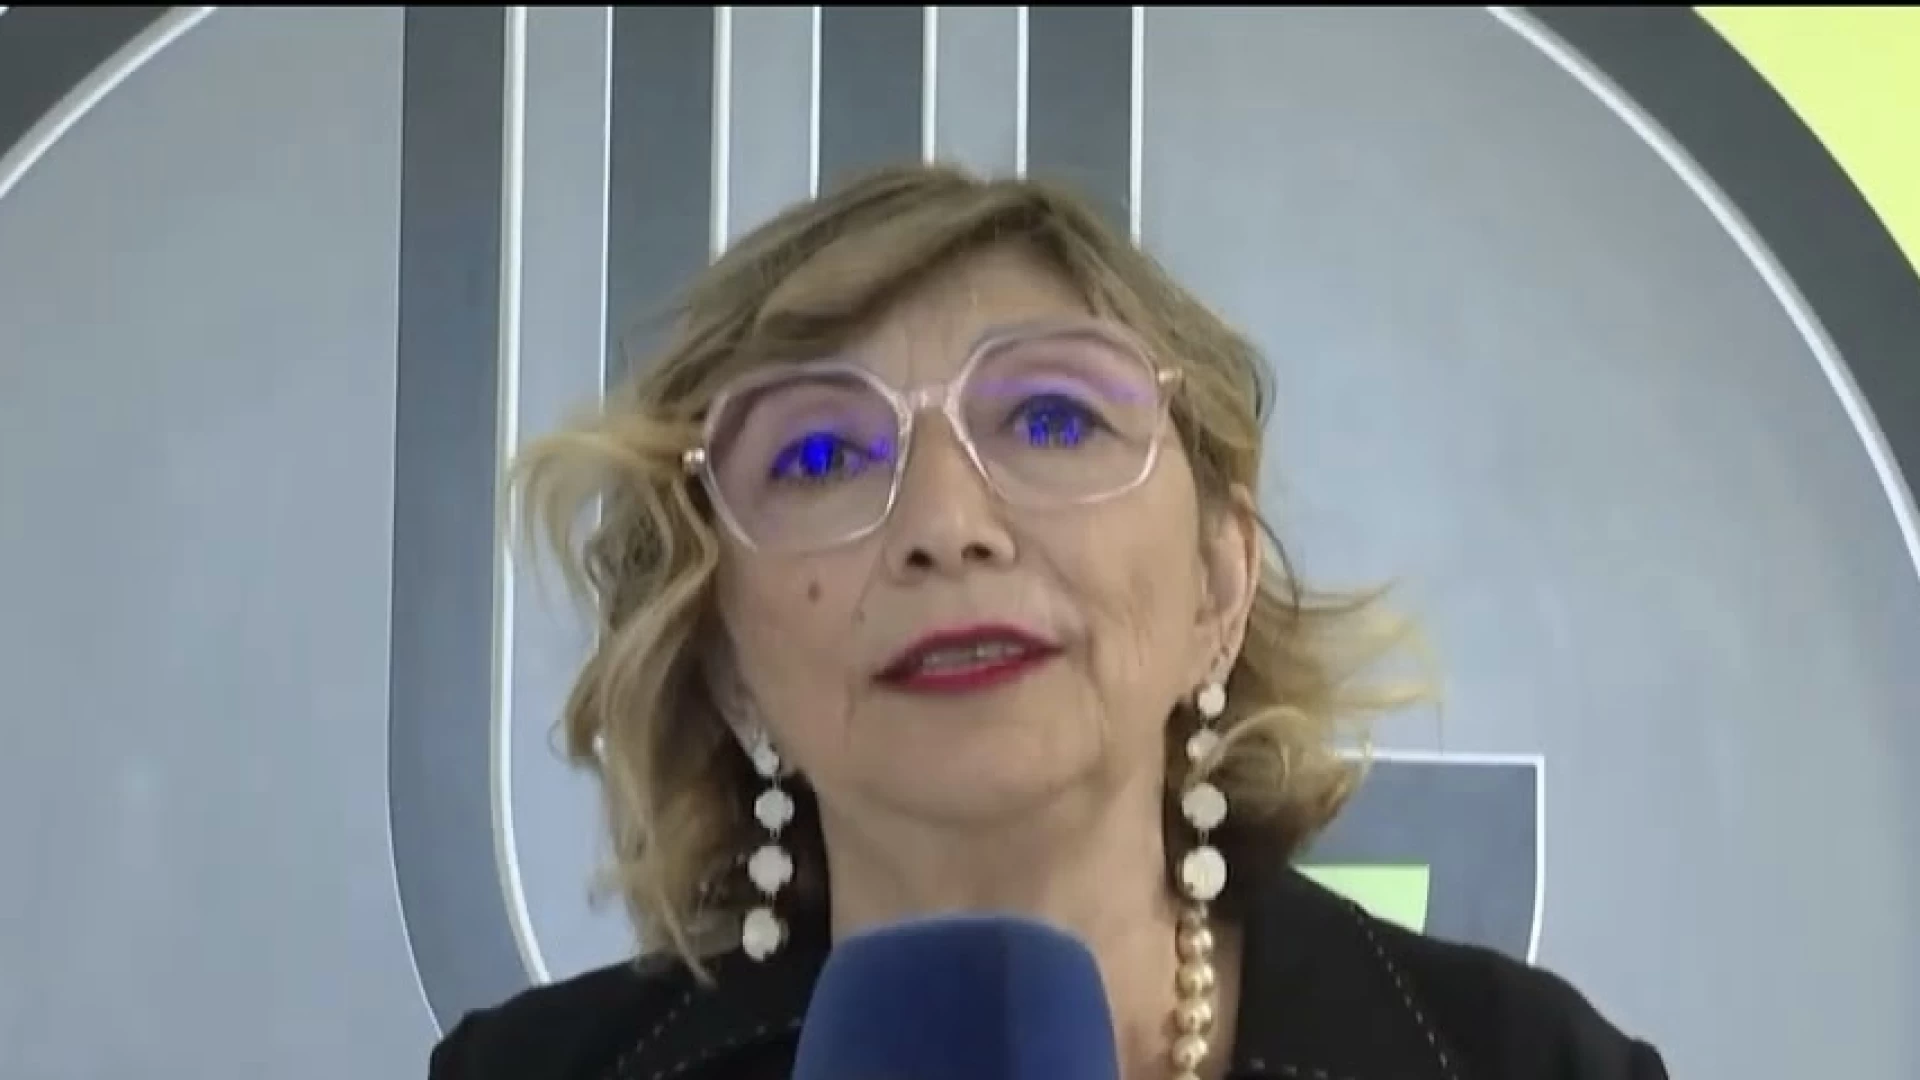 Esami di maturita' al via in Molise. 2500 i candidati. Il video messaggio della Direttrice dell'Ufficio scolastico regionale Maria Chimisso.